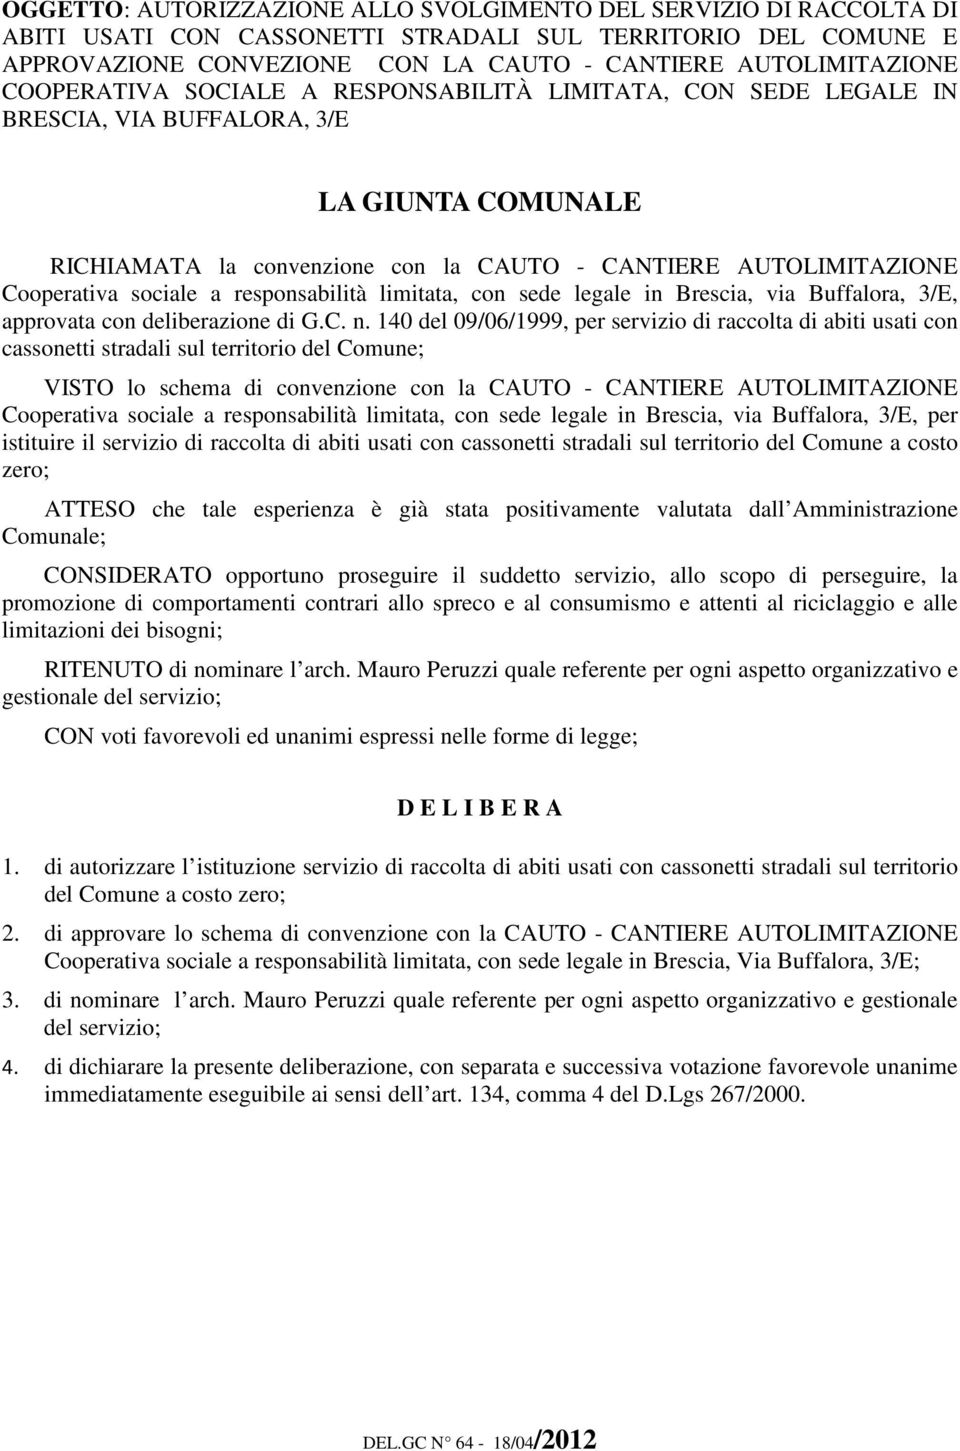 a responsabilità limitata, con sede legale in Brescia, via Buffalora, 3/E, approvata con deliberazione di G.C. n.